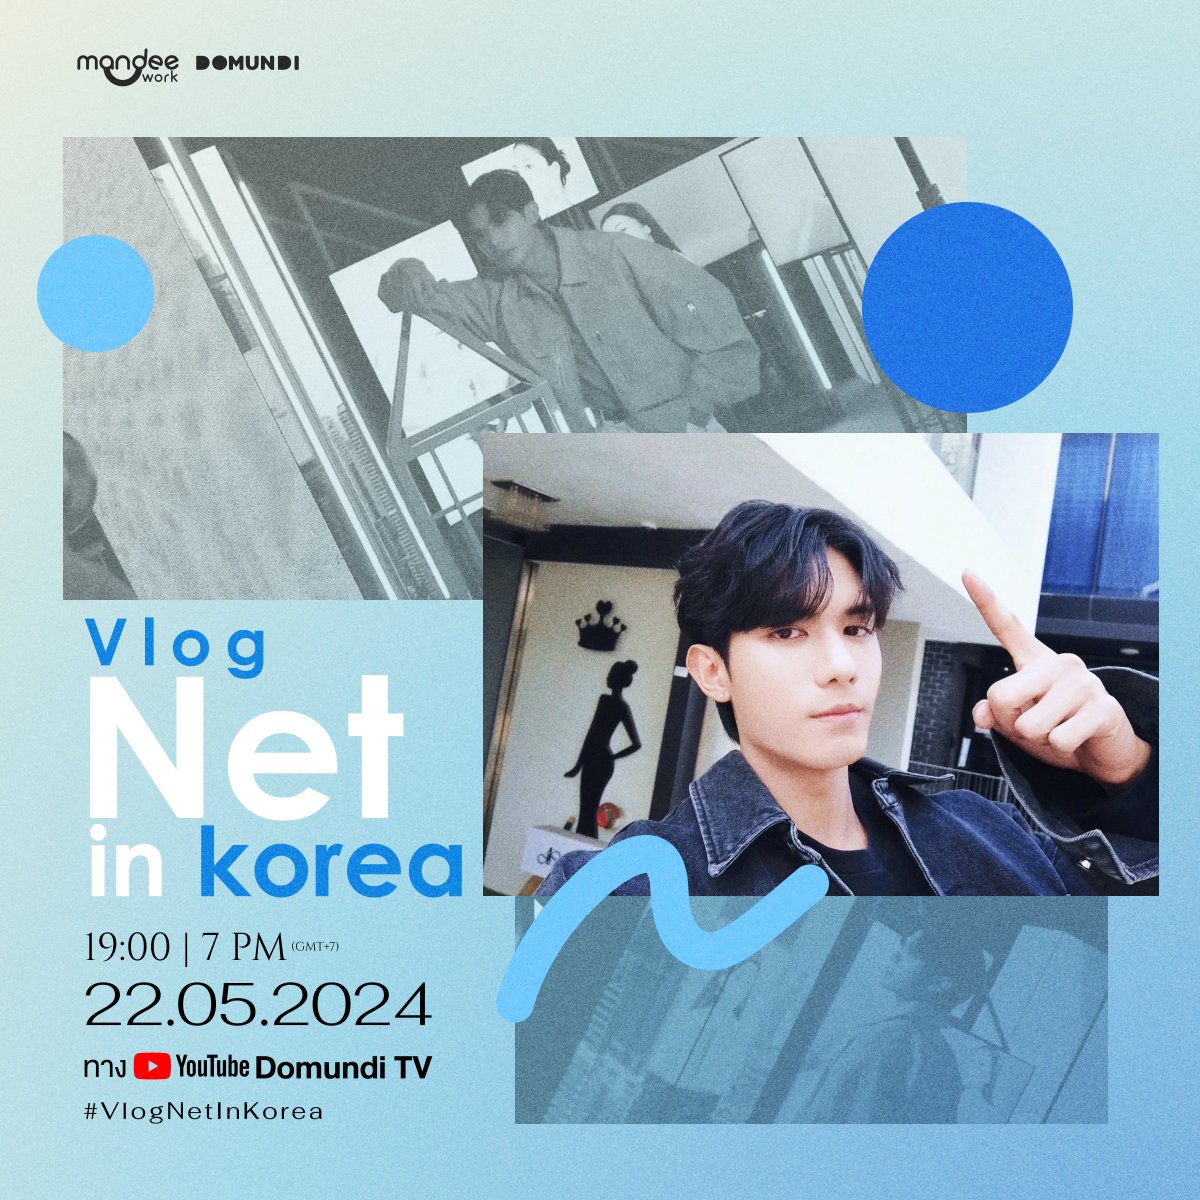 พรุ่งนี้! “เน็ต” @netsiraphop จะพาทุกคนไปชมบรรยากาศงาน “15th Anniversary & 3CE Pink Space Hotel Opening” ที่กรุงโซล ประเทศเกาหลีใต้ กับ Vlog “Net in Korea” 🎥✨ 🗓️ : 22.05.2024 ⏰ : 19.00 น. I 7 PM (GMT+7) 📍 : YouTube : DOMUNDI TV #️⃣ : #.VlogNetInKorea #netsiraphop #domunditv